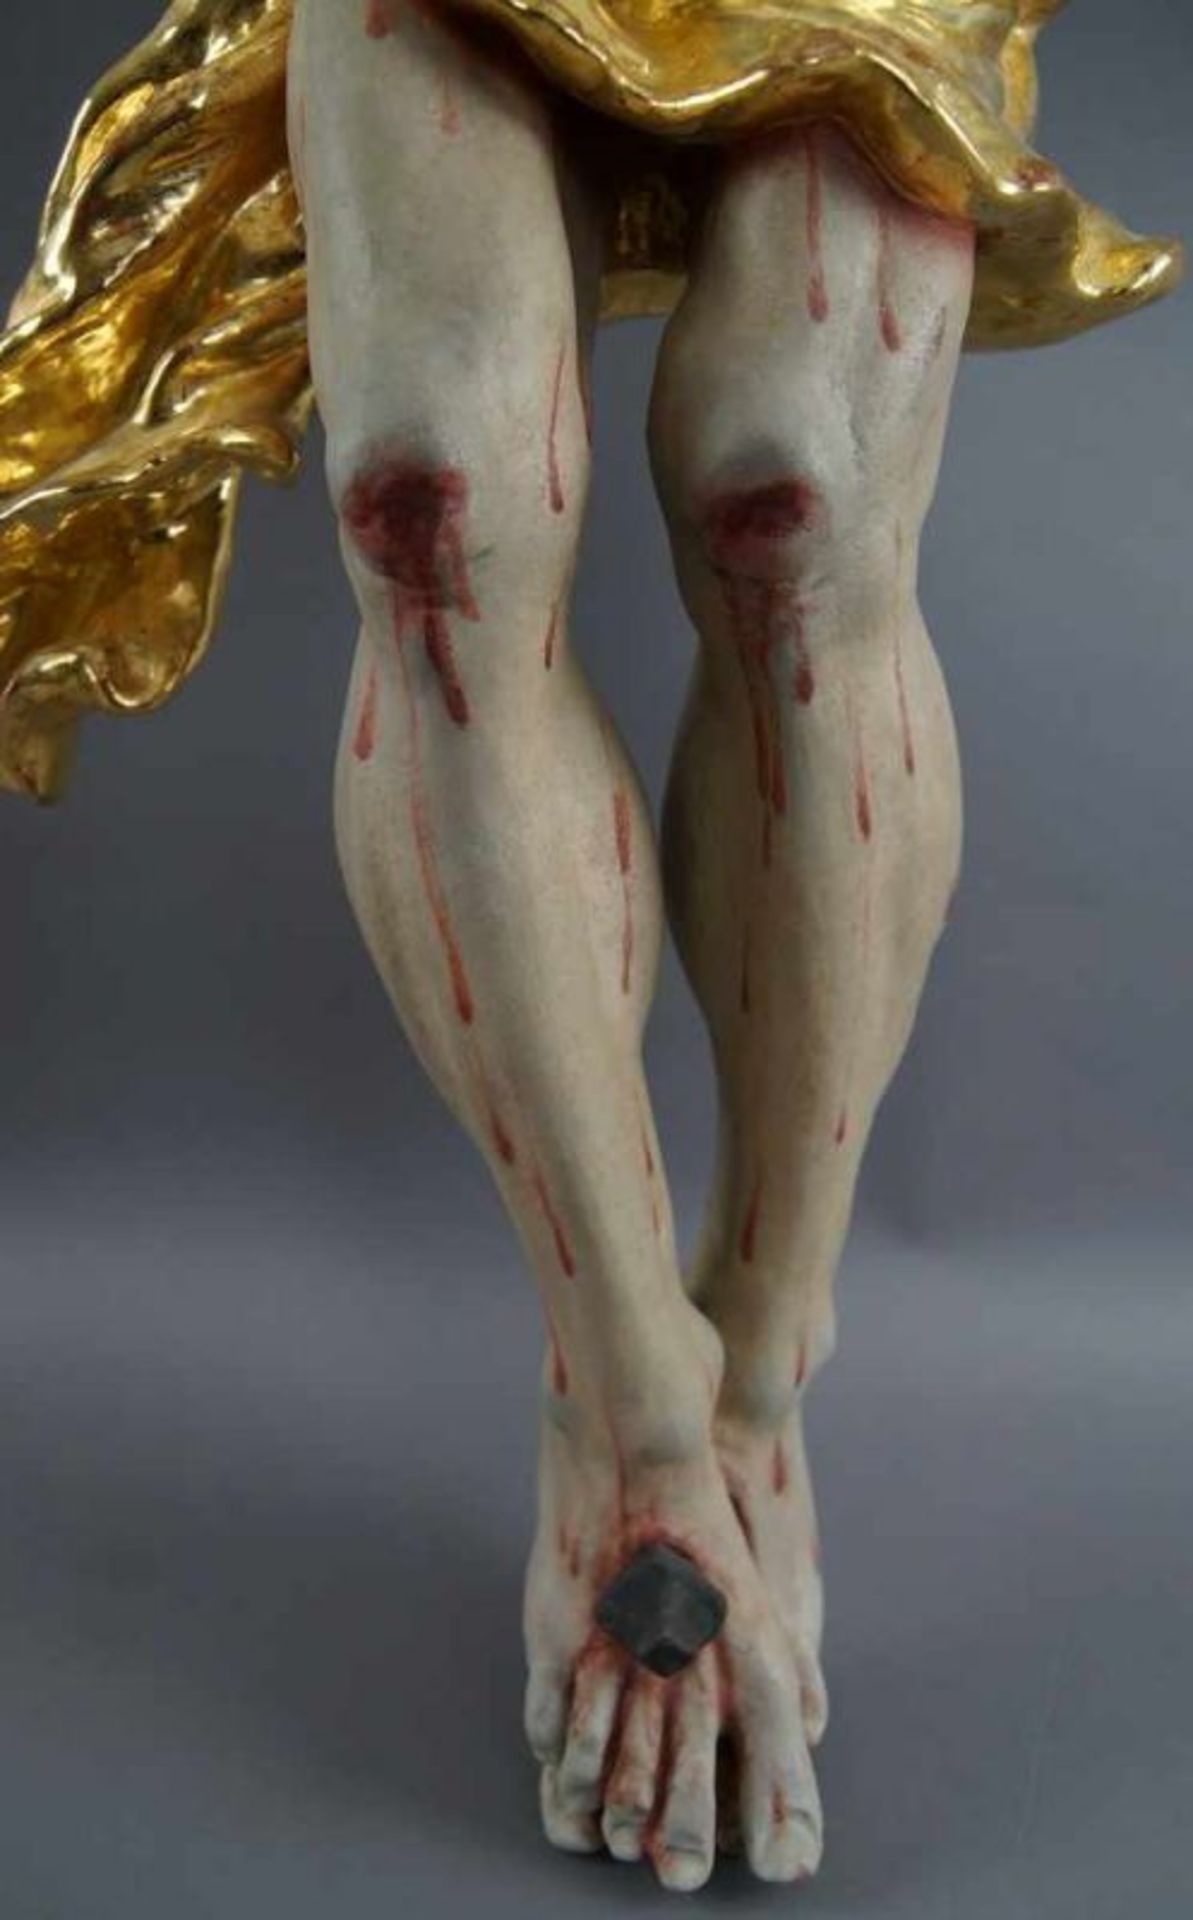 Barocker Korpus Christi, Holz geschnitzt und gefasst, 18. JH, rest., 92x79cm 20.17 % buyer's premium - Bild 5 aus 11